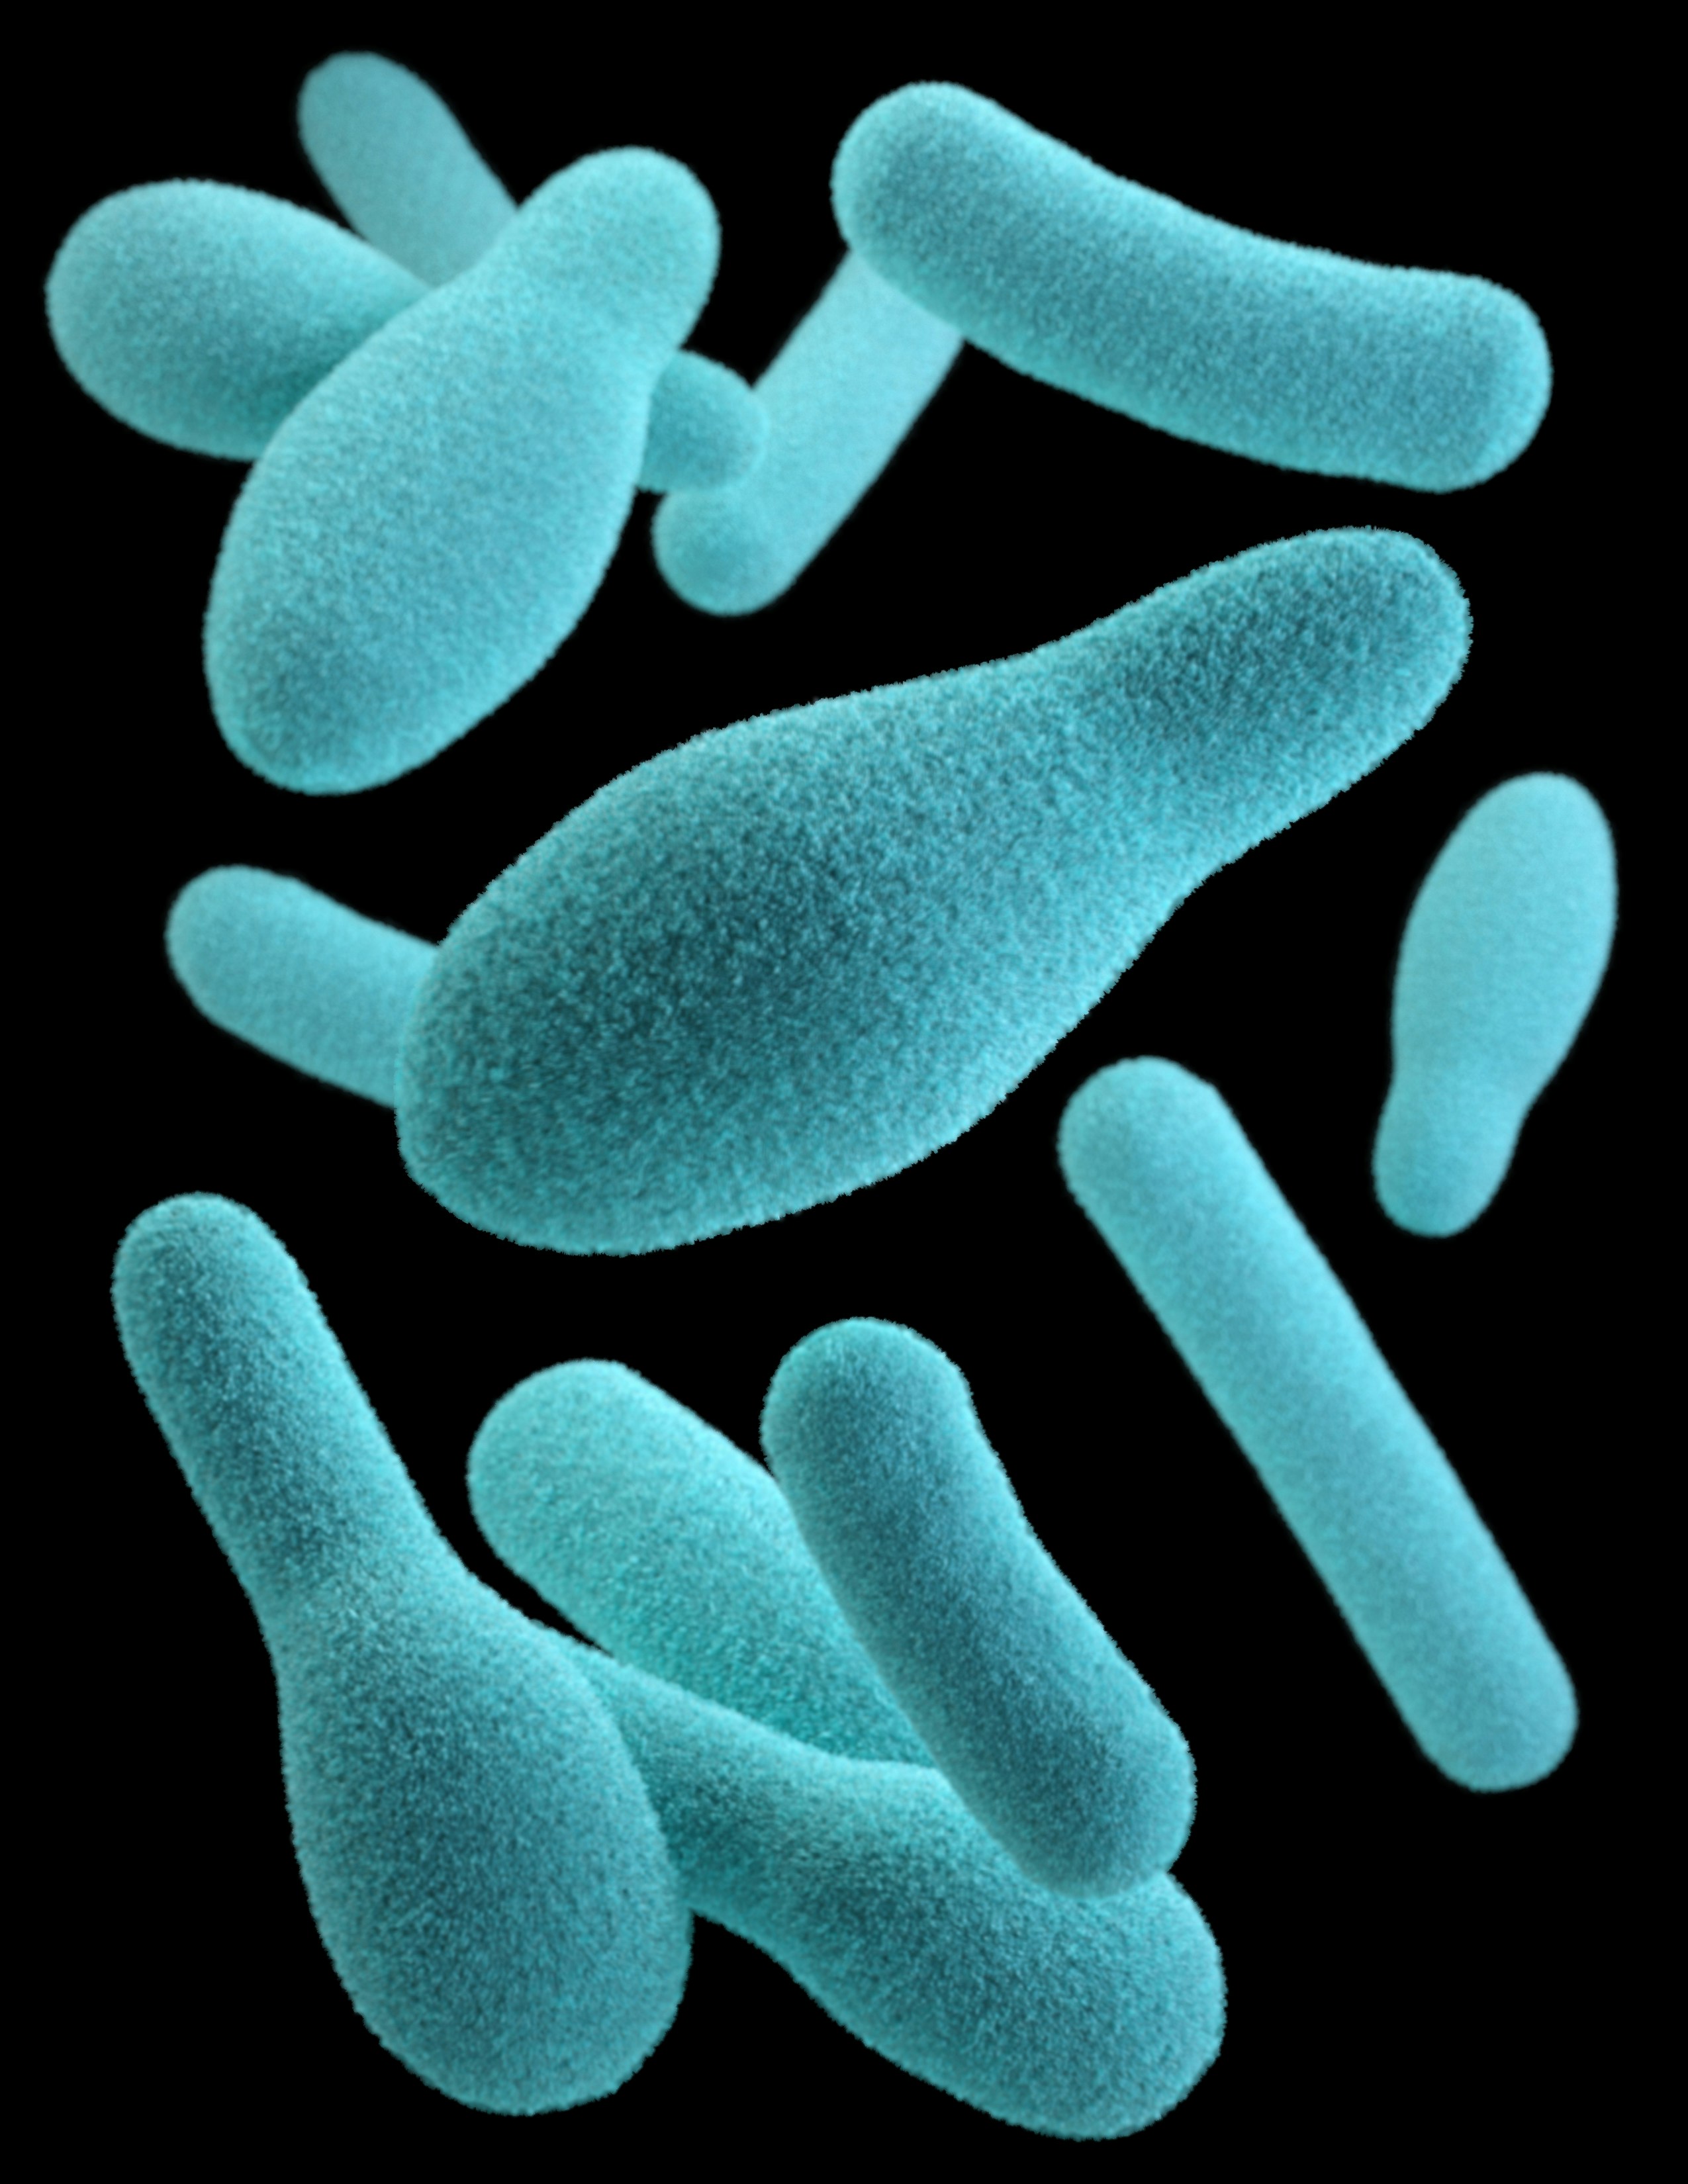 腸道壞菌會產生不好的物質使人體健康受到危害。